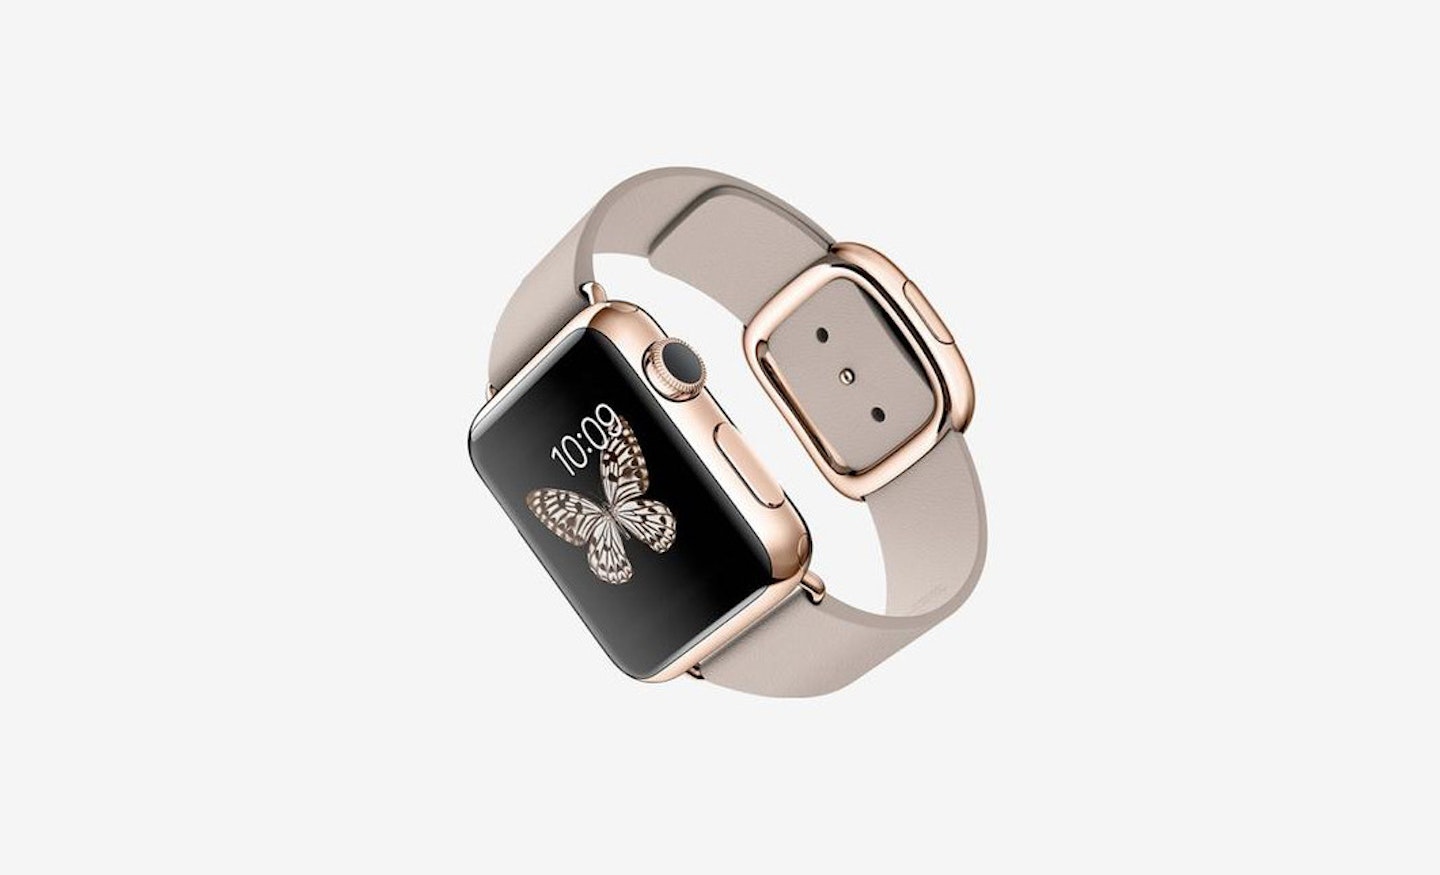 The Apple Watch is already breaking hearts